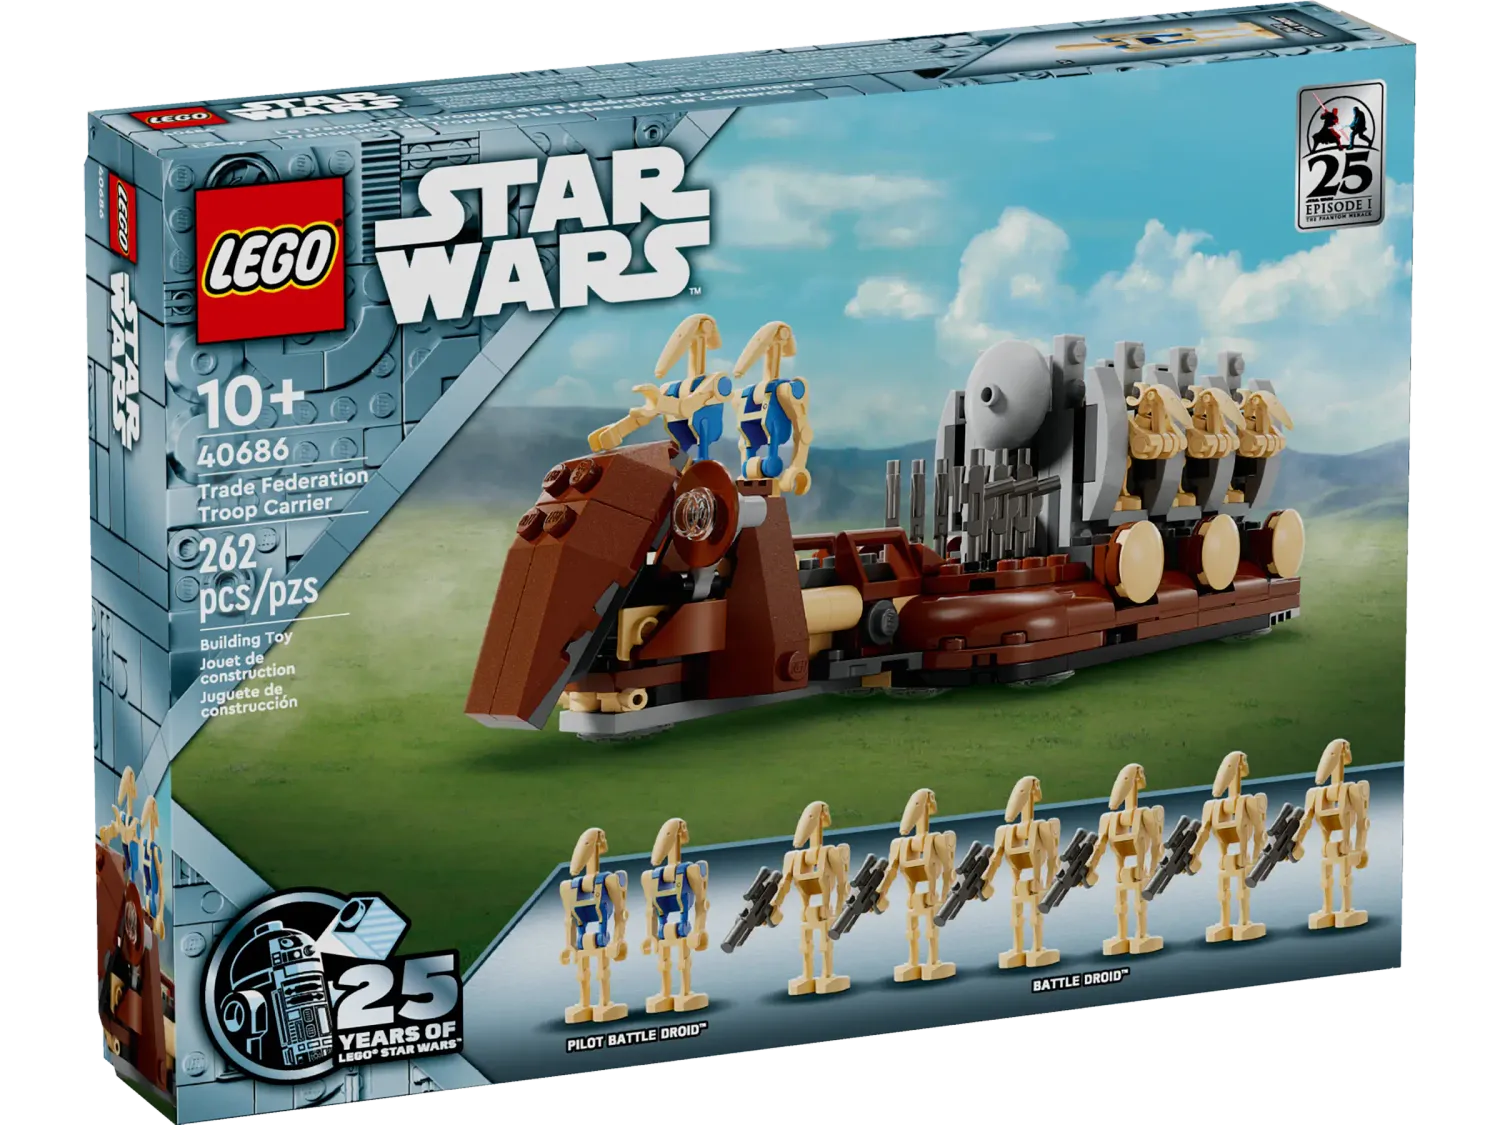 LEGO Star Wars 40686 - Handelsfederatie troepentransport